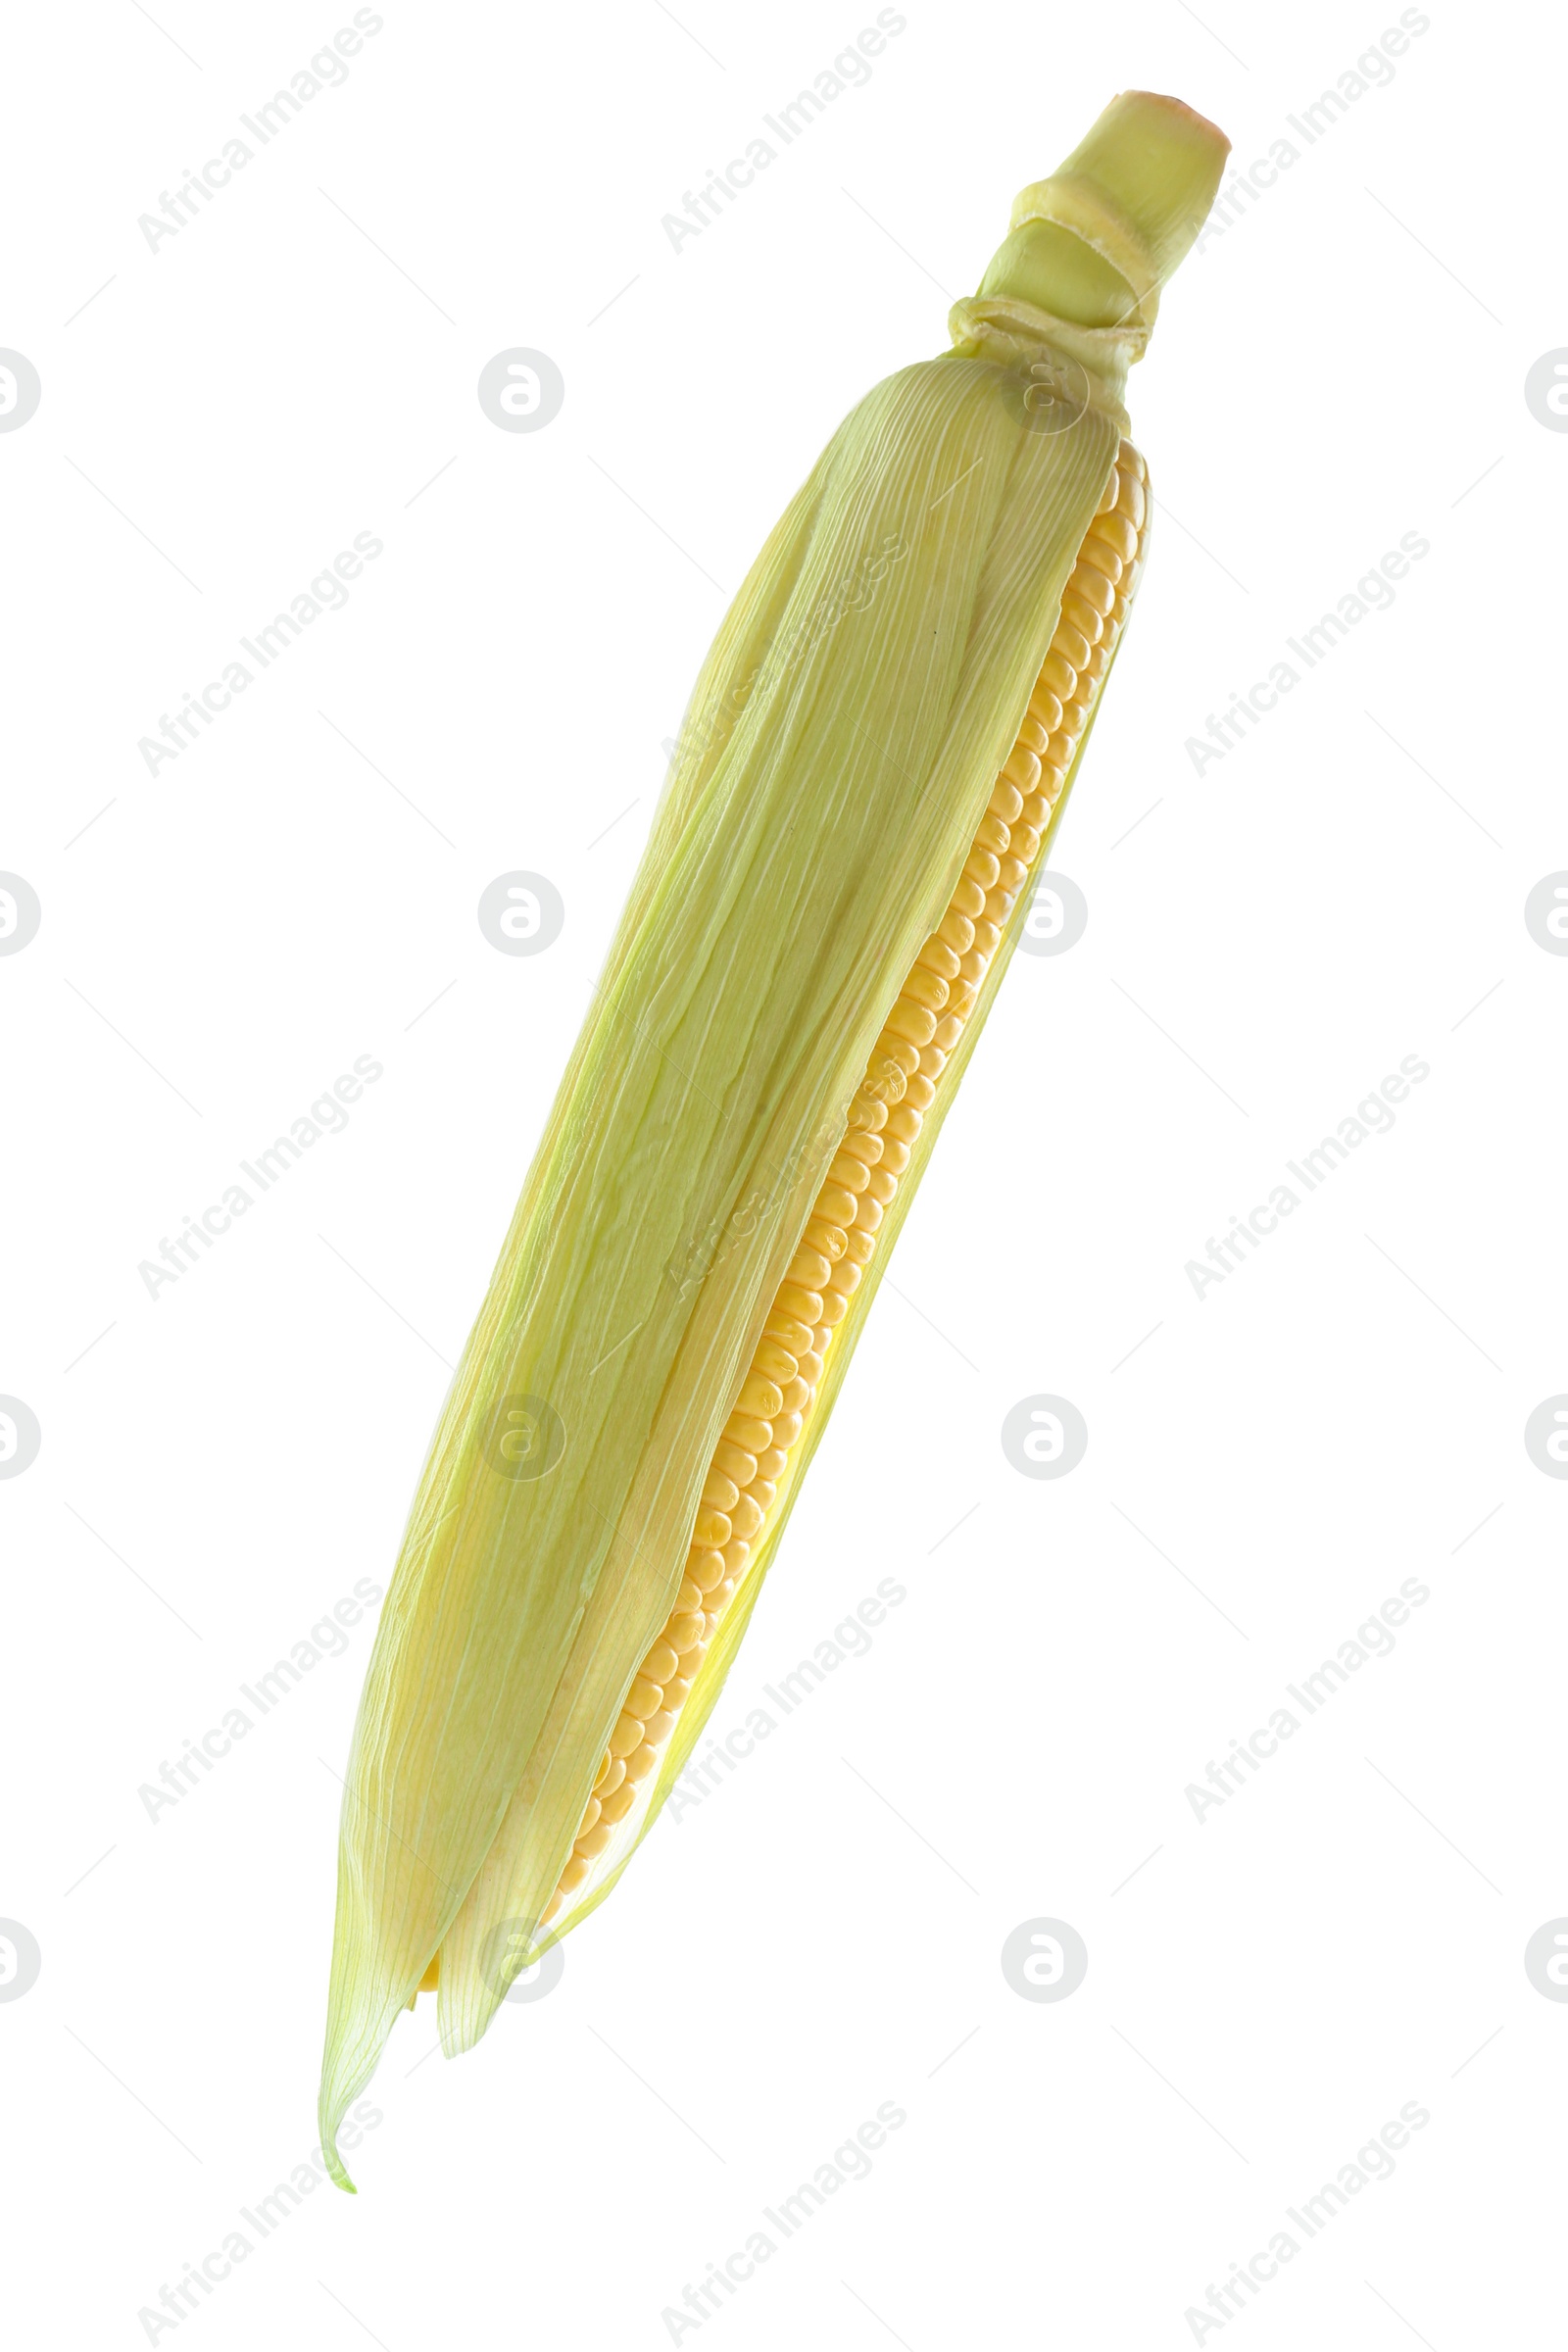 Photo of Tasty fresh corn cob isolated on white